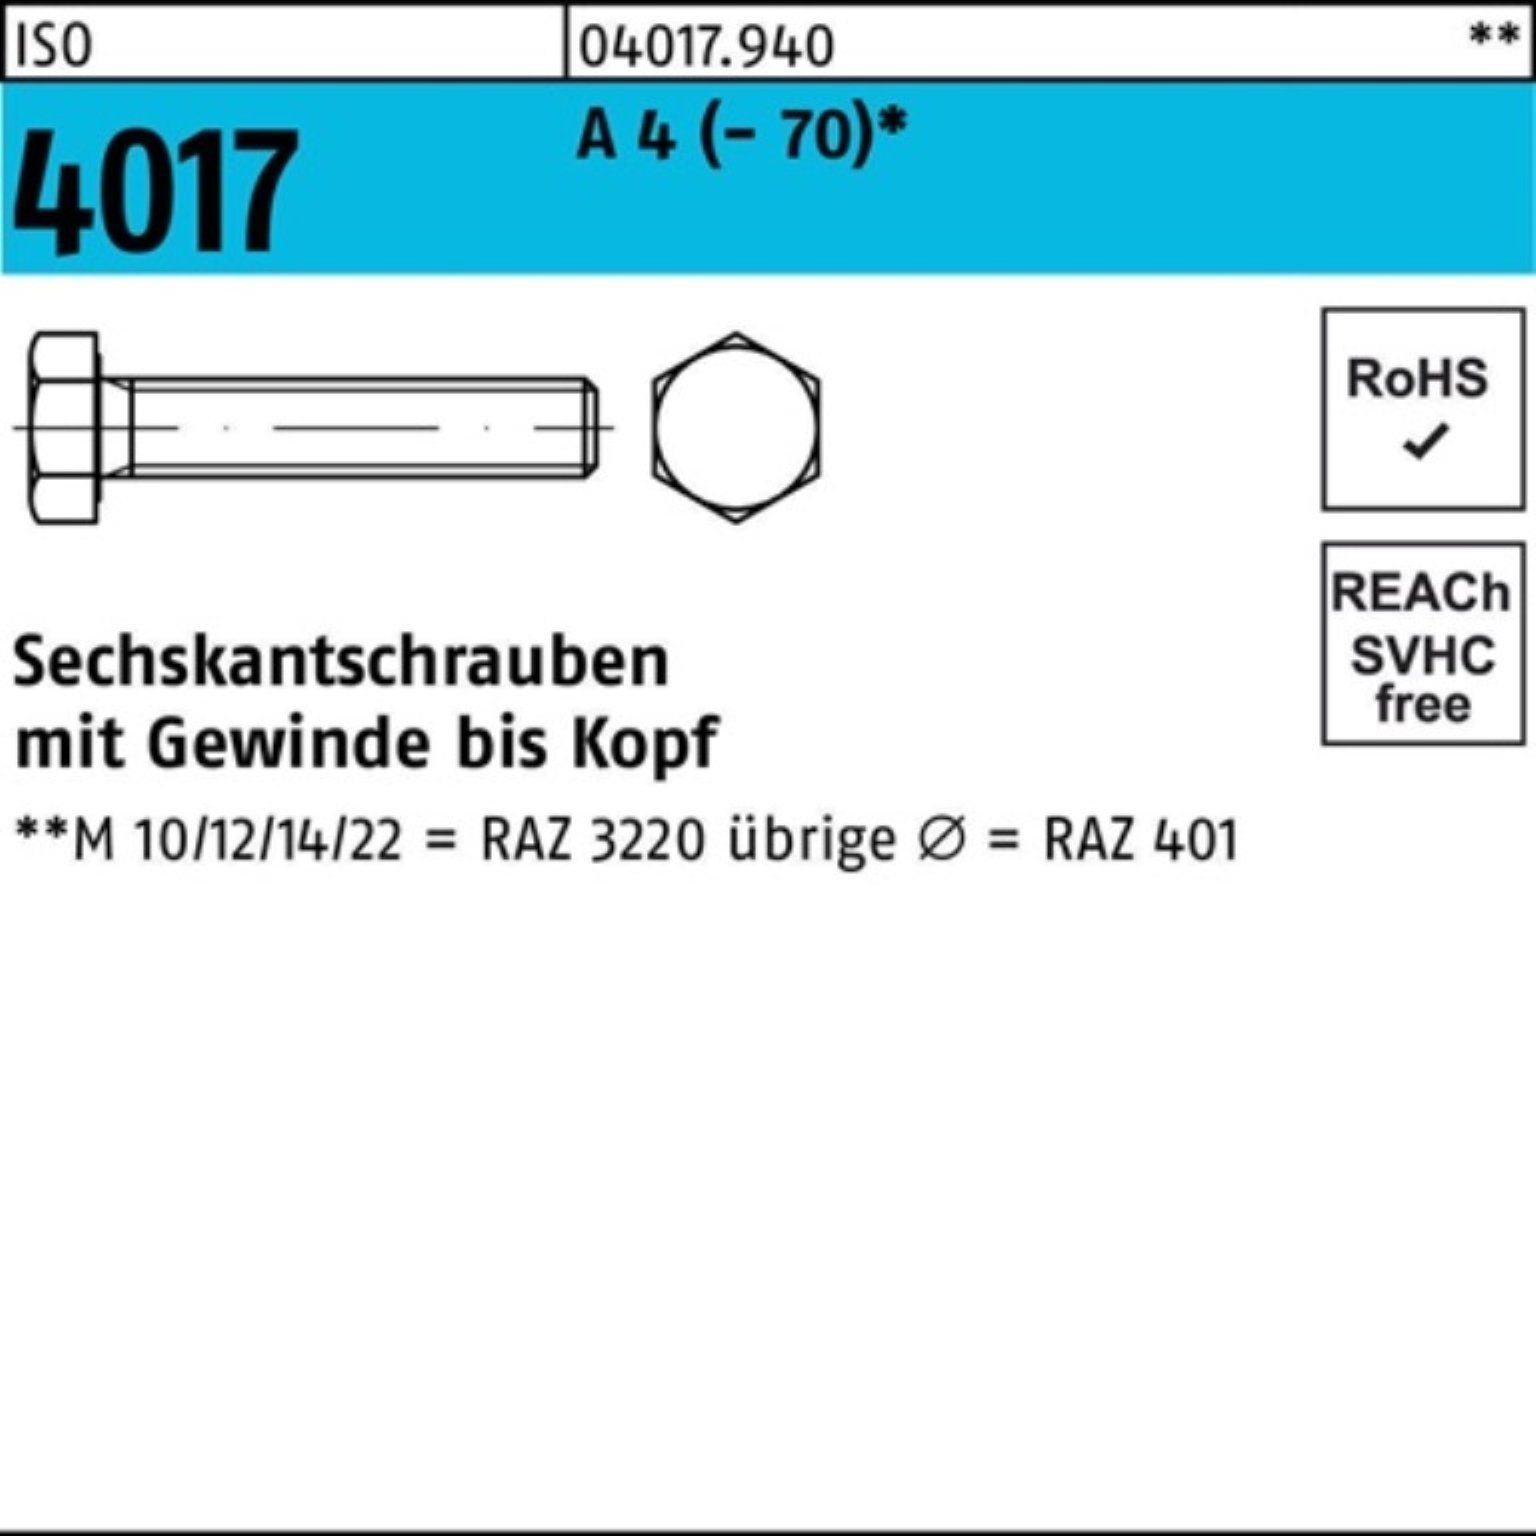 VG 100er Sechskantschraube M12x (70) Stück 4017 70 ISO 50 Sechskantschraube A Bufab Pack 4